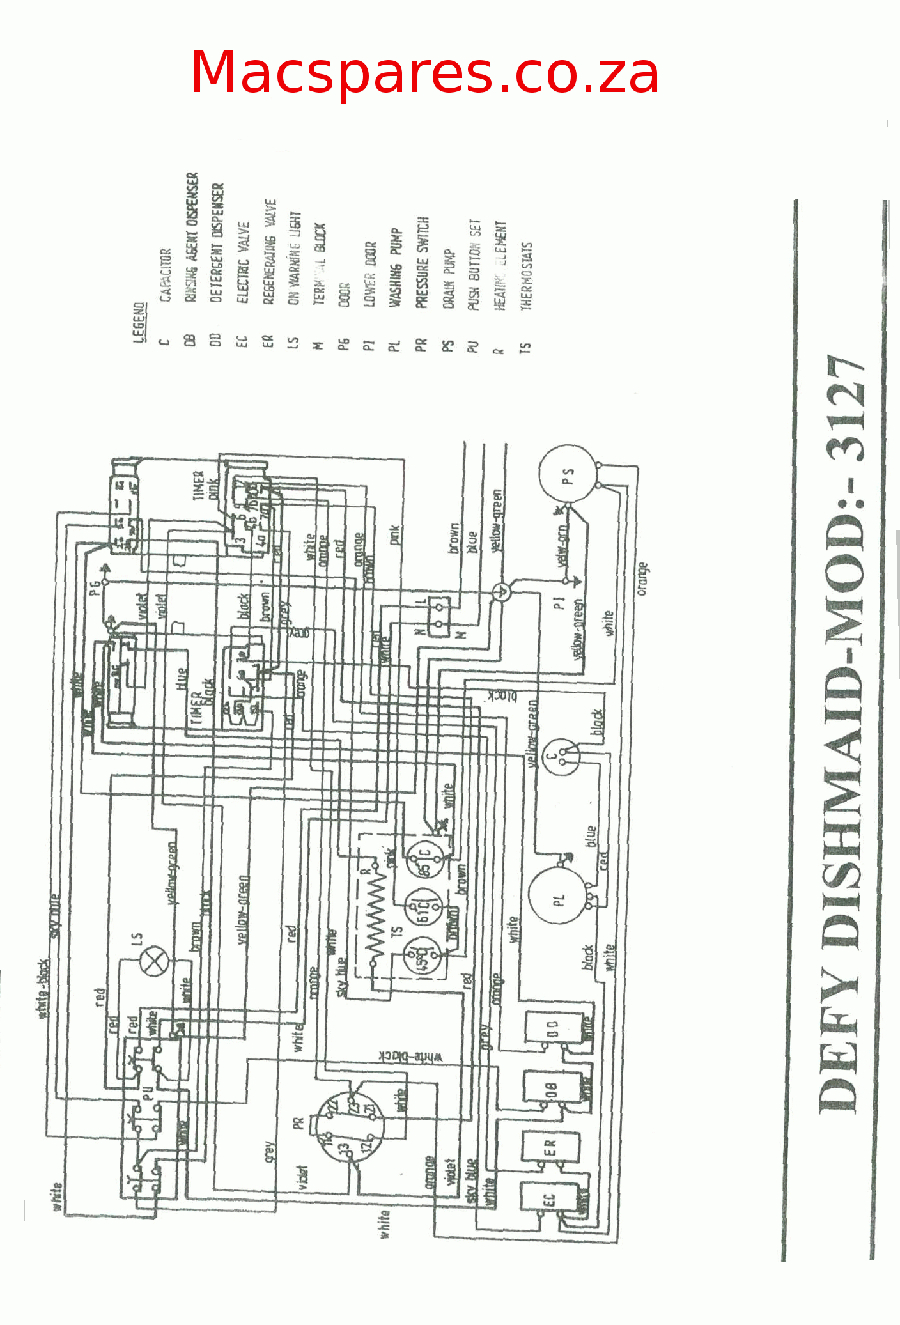 Wiring Diagram   Dishwashers   Macspares